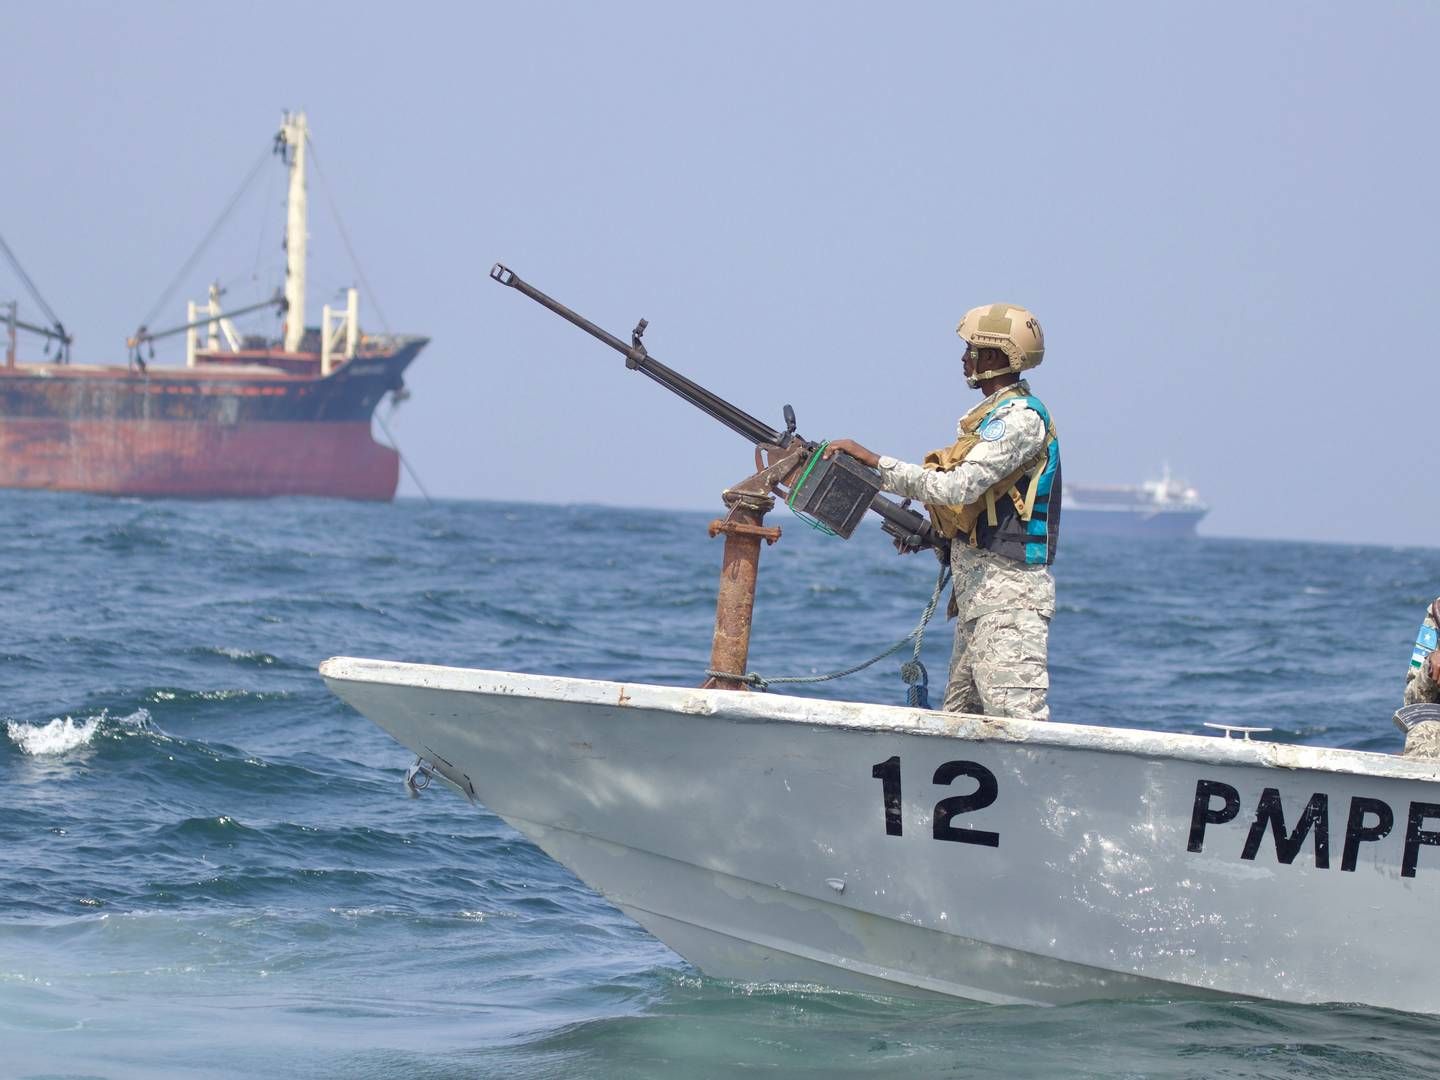 UK Maritime Trade Operations, UKMTO, skriver på sin hjemmeside, at et skib er blevet boardet 600 sømil fra Mogadishu, der er hovedstaden i Somalia.